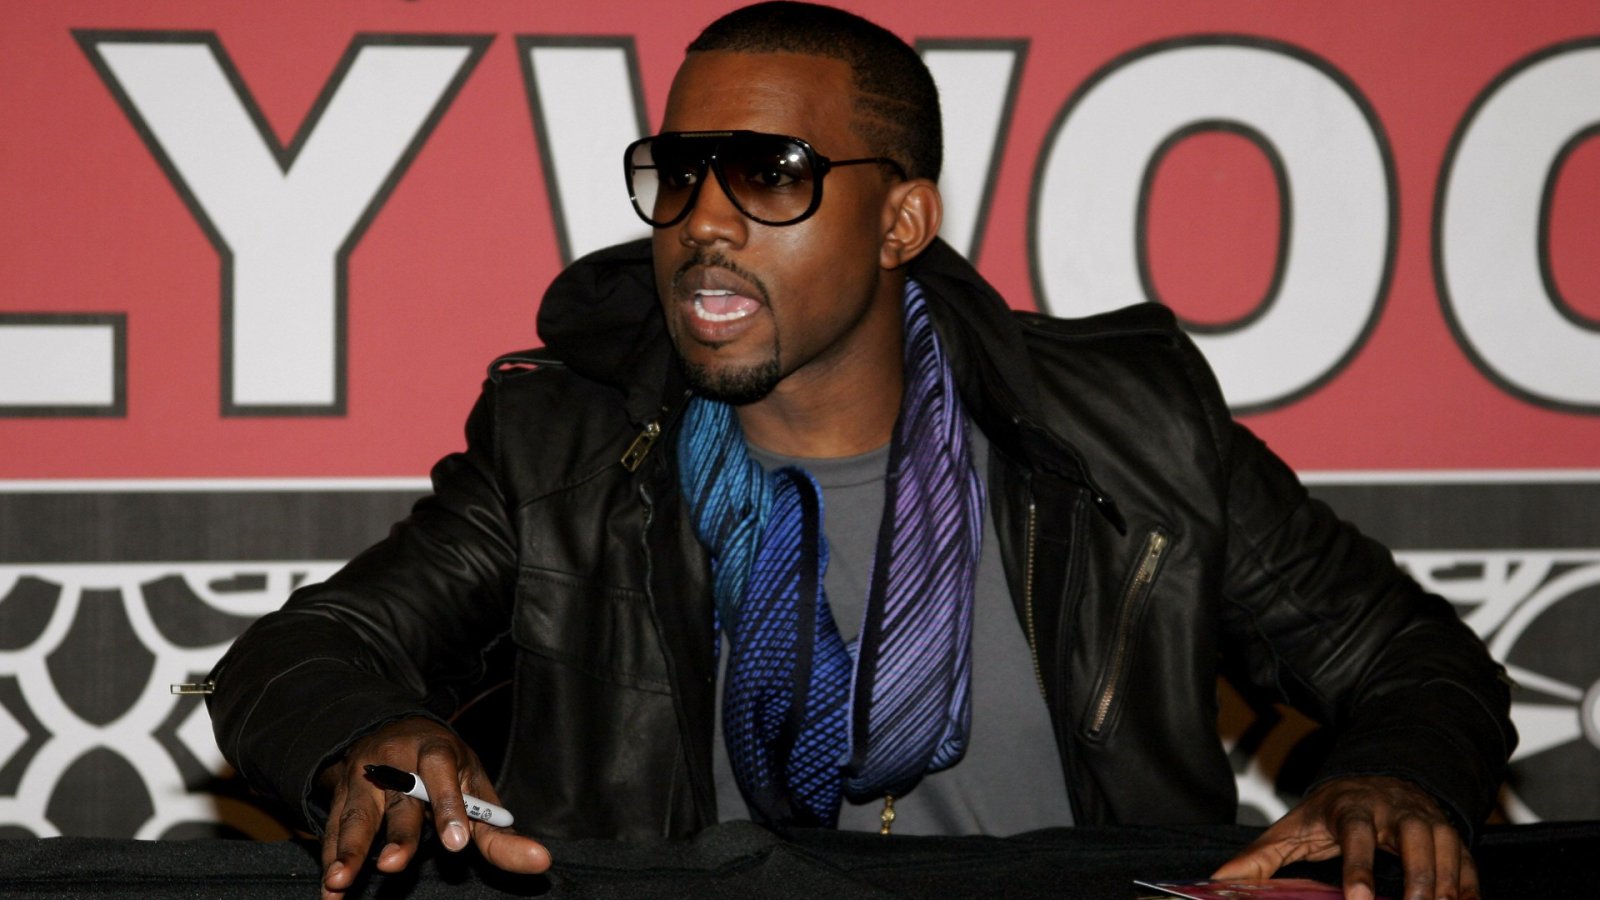 Der größte Untergang eines Künstlers: Kanye West und die Marken, die Krawatten kappen